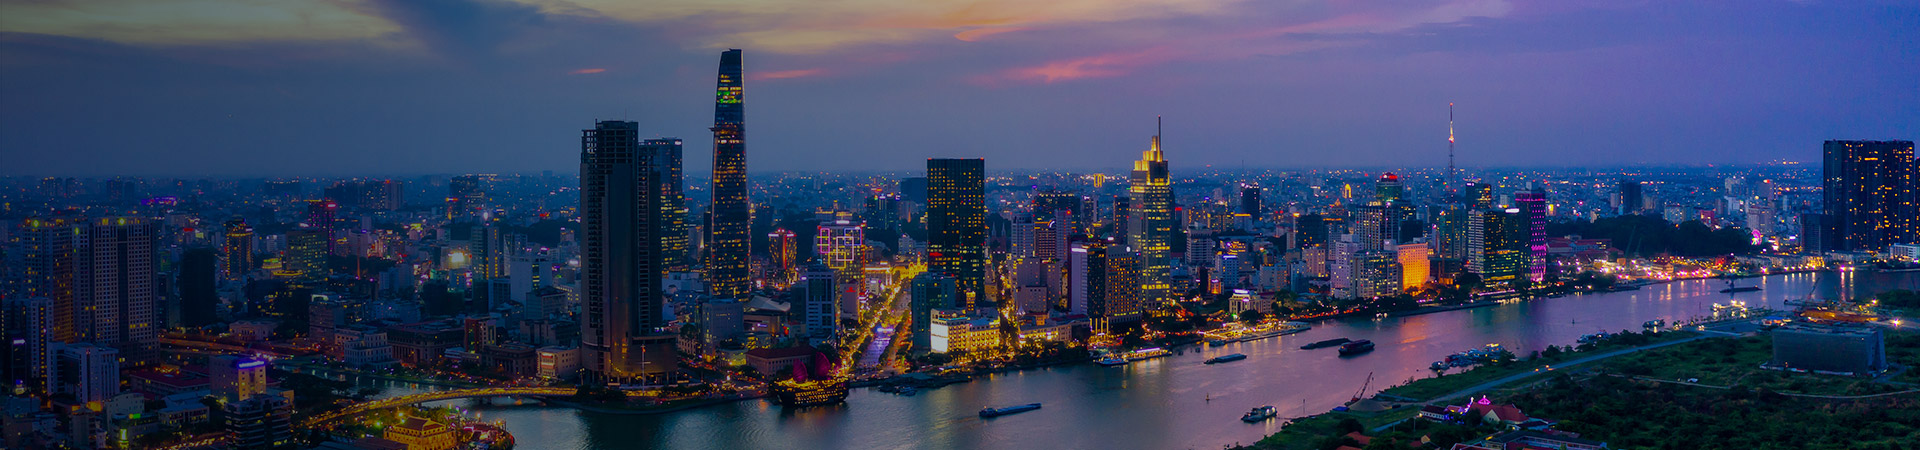 Thành phố Hồ Chí Minh